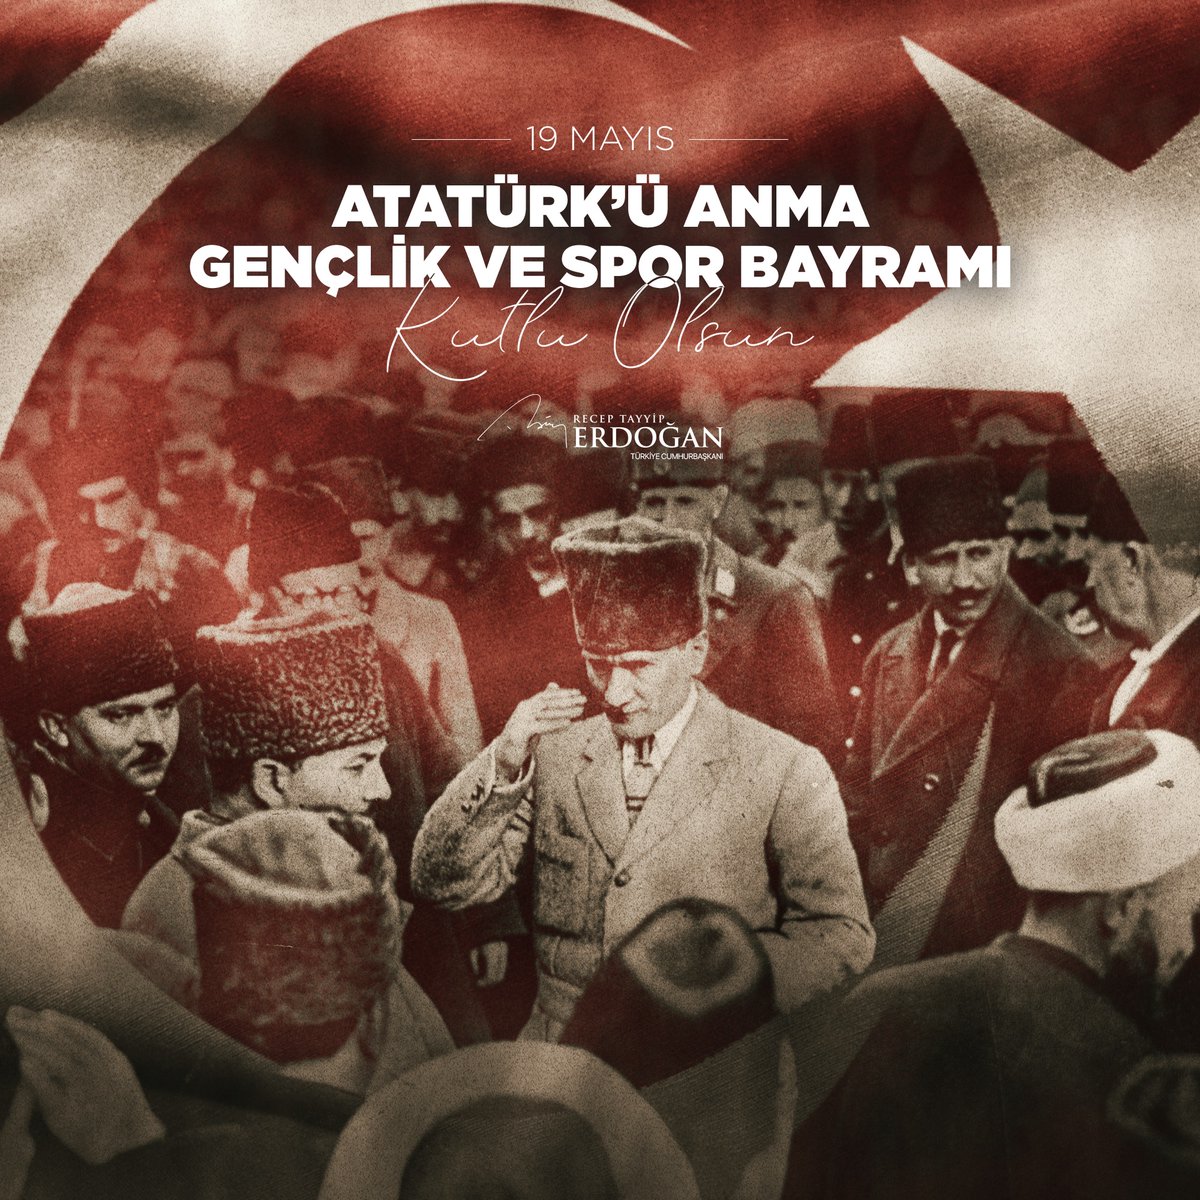 Gençlerimizin ve aziz milletimizin 19 Mayıs Atatürk’ü Anma, Gençlik ve Spor Bayramı'nı kutluyor, başta Gazi Mustafa Kemal Atatürk olmak üzere Kurtuluş Savaşımızın bütün kahramanlarını saygıyla anıyorum.

tccb.gov.tr/basin-aciklama…